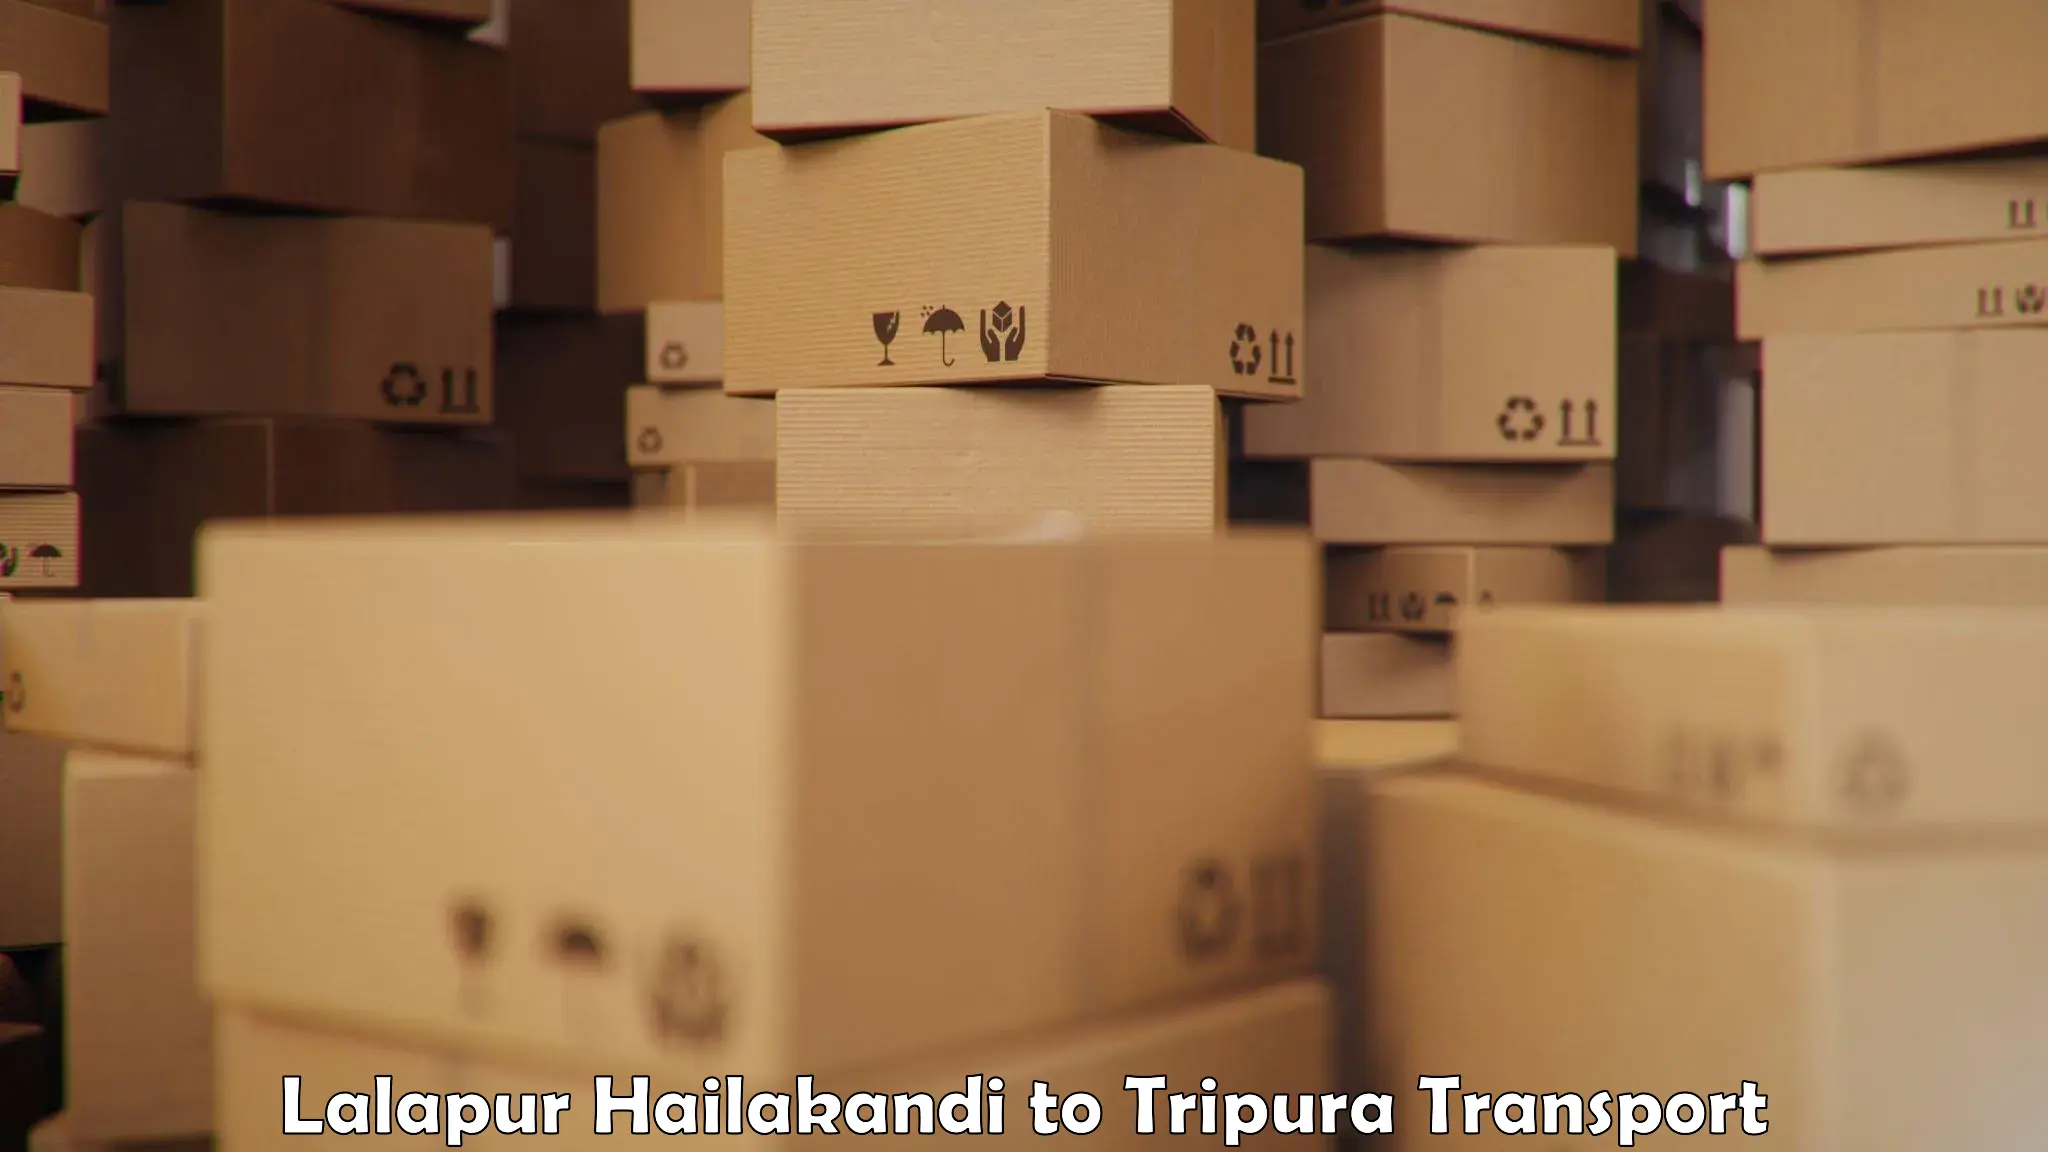 Delivery service Lalapur Hailakandi to Kumarghat